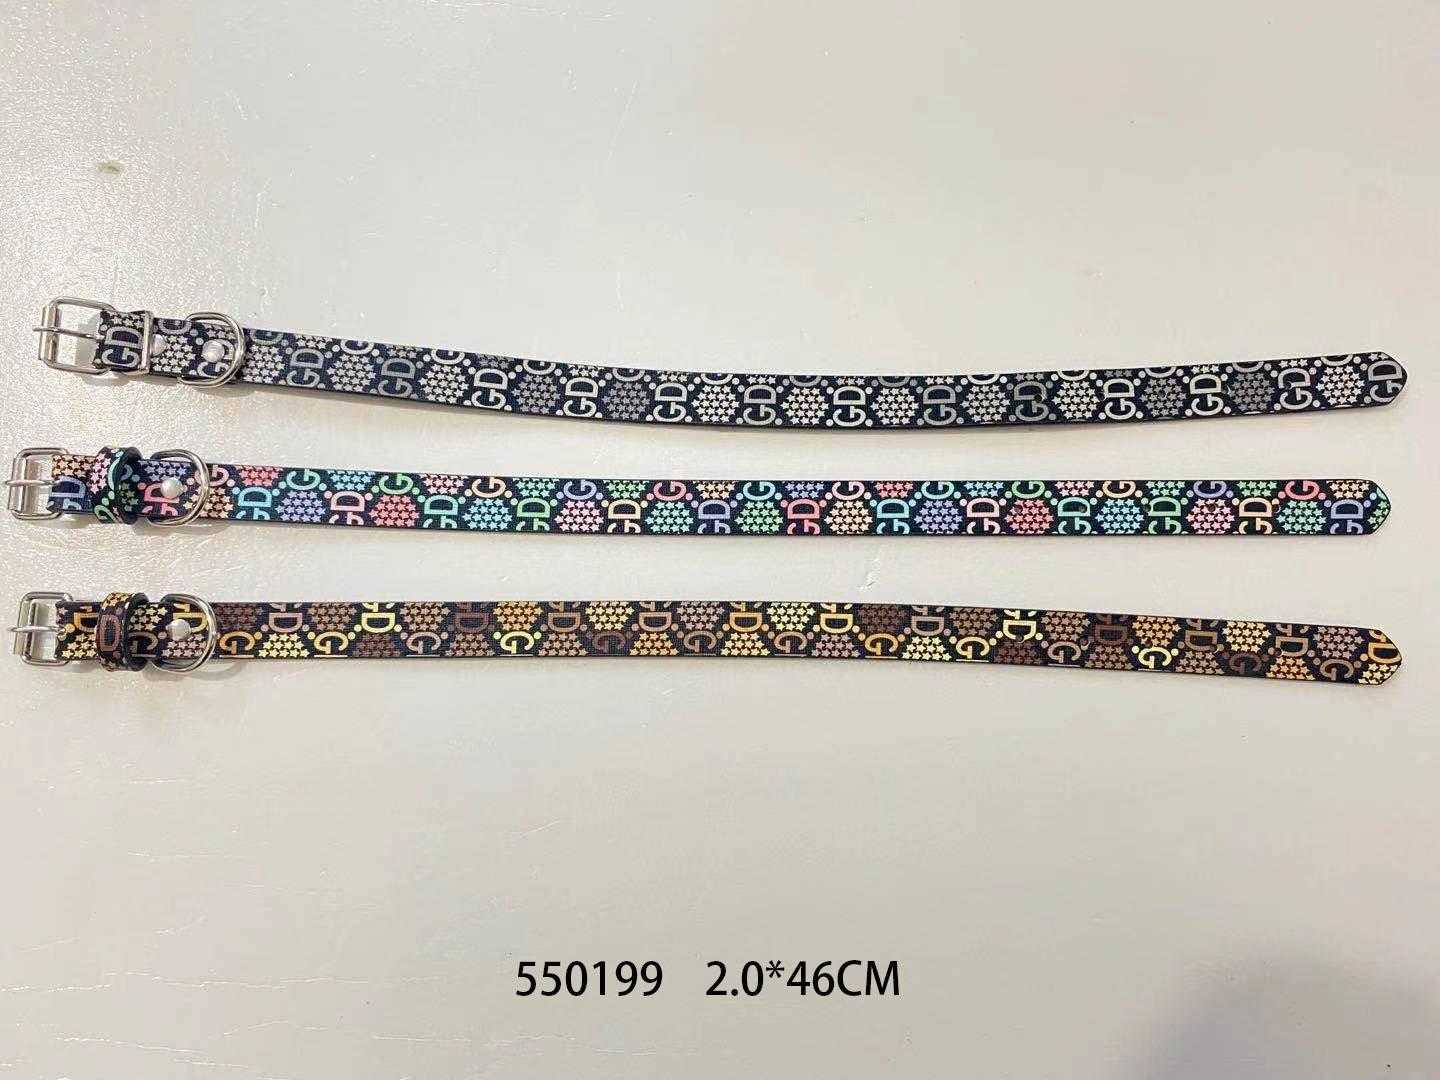 Collar - Dog collar - GD - 2x46cm - 550199